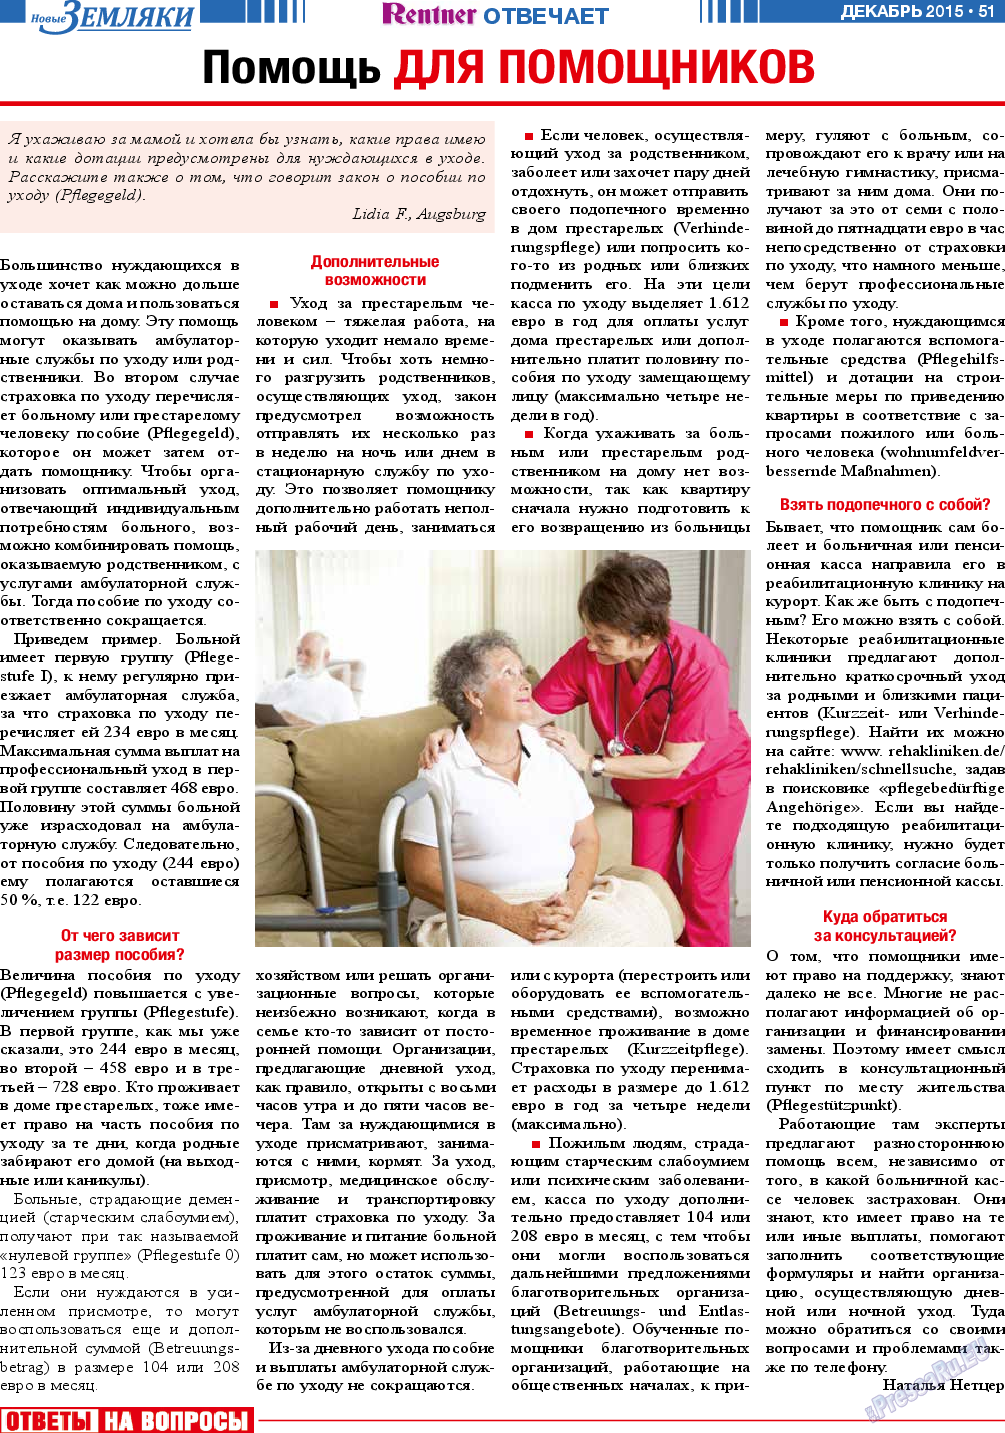 Новые Земляки, газета. 2015 №12 стр.51